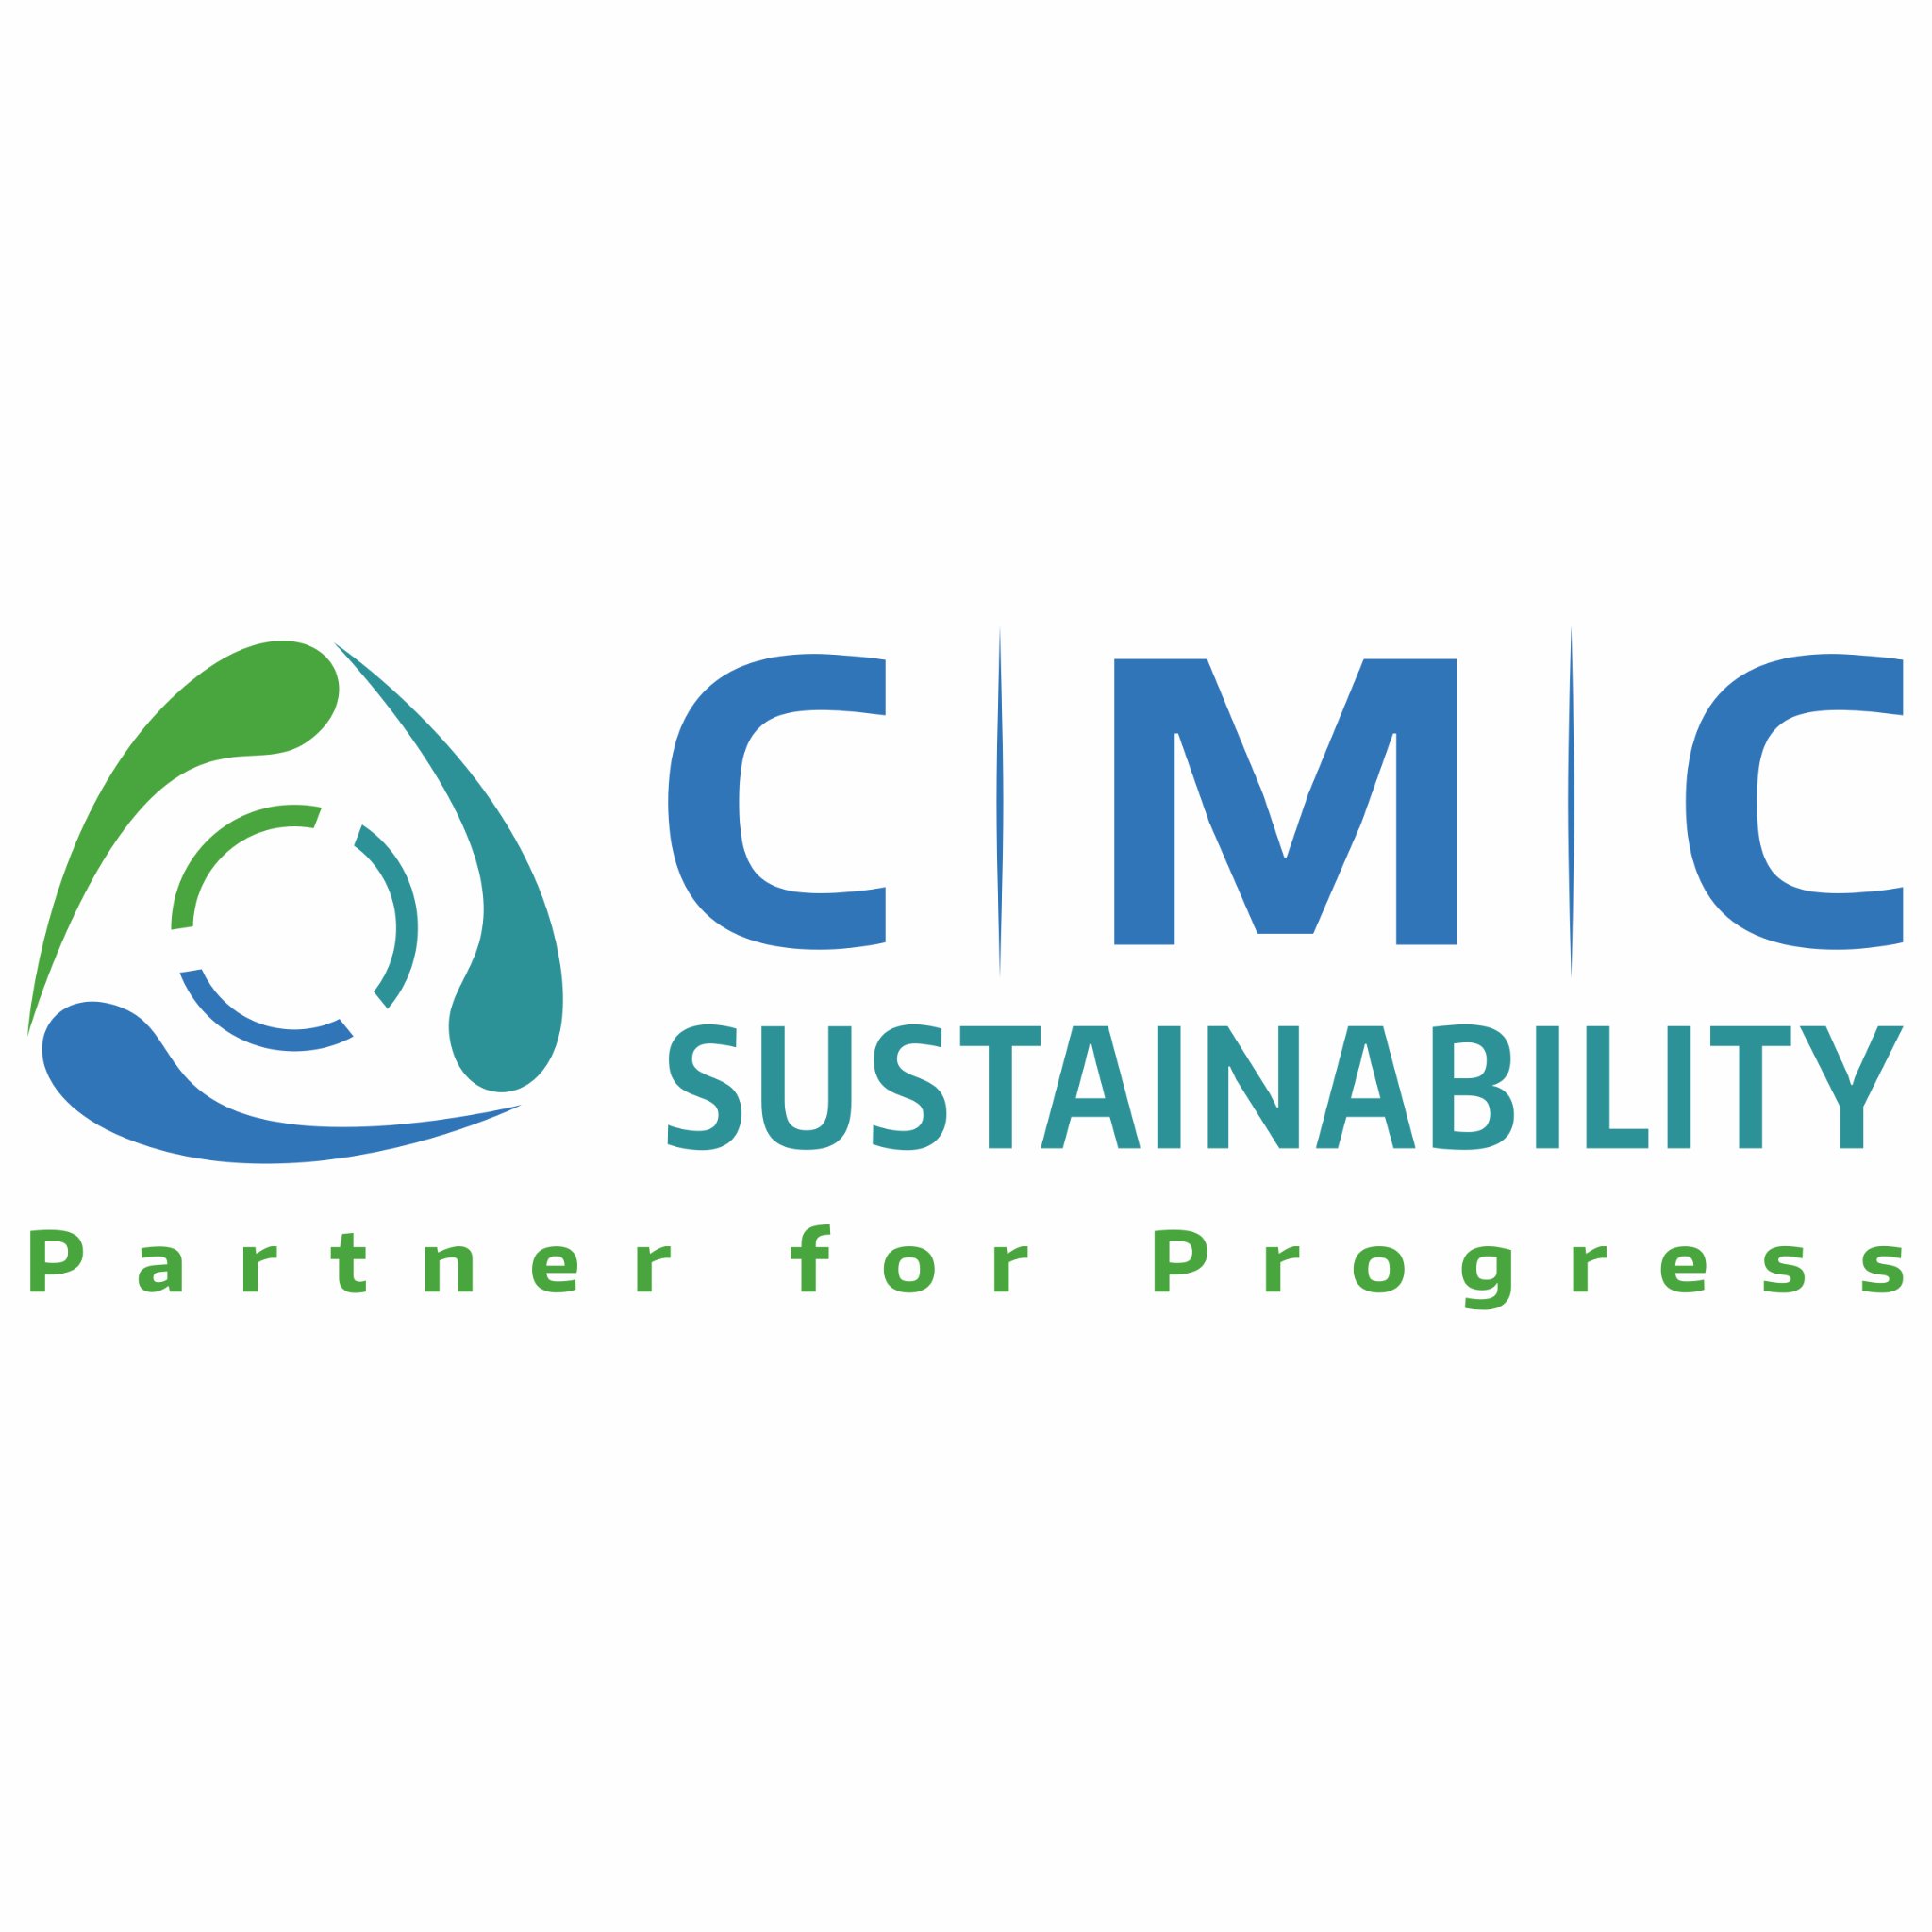 CMC ist Partner für Unternehmen/Kommunen, wenn es um Projekte rund um die Themen Nachhaltigkeit, Umwelt- und Arbeitsschutz, Energieeffizienz & Klimaschutz geht.